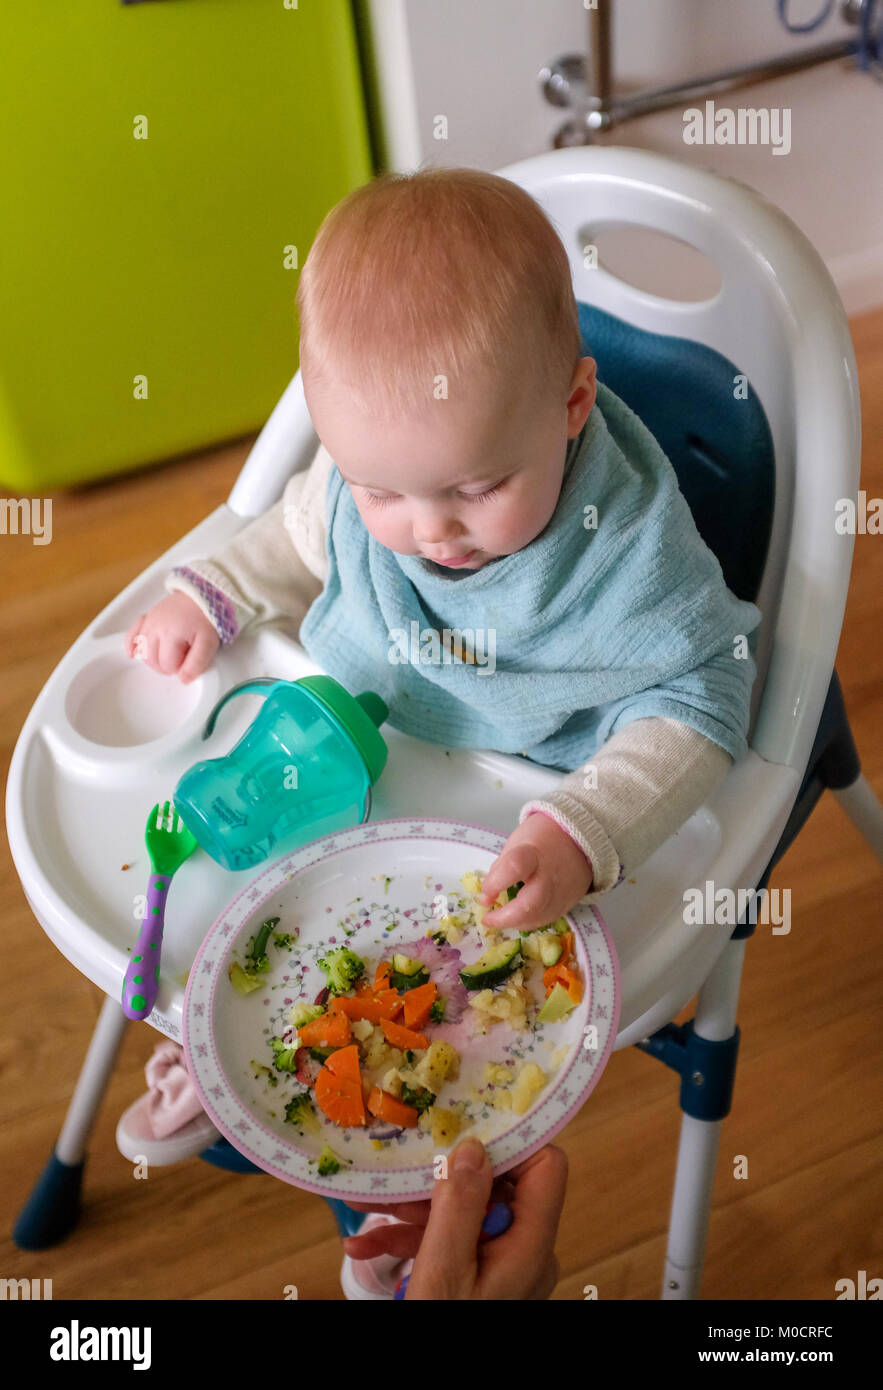 Jeune Bebe 1 Ans Fille Enfant De Manger Sain Pour Le Diner De Legumes Et Des Batonnets De Poisson Photo Stock Alamy